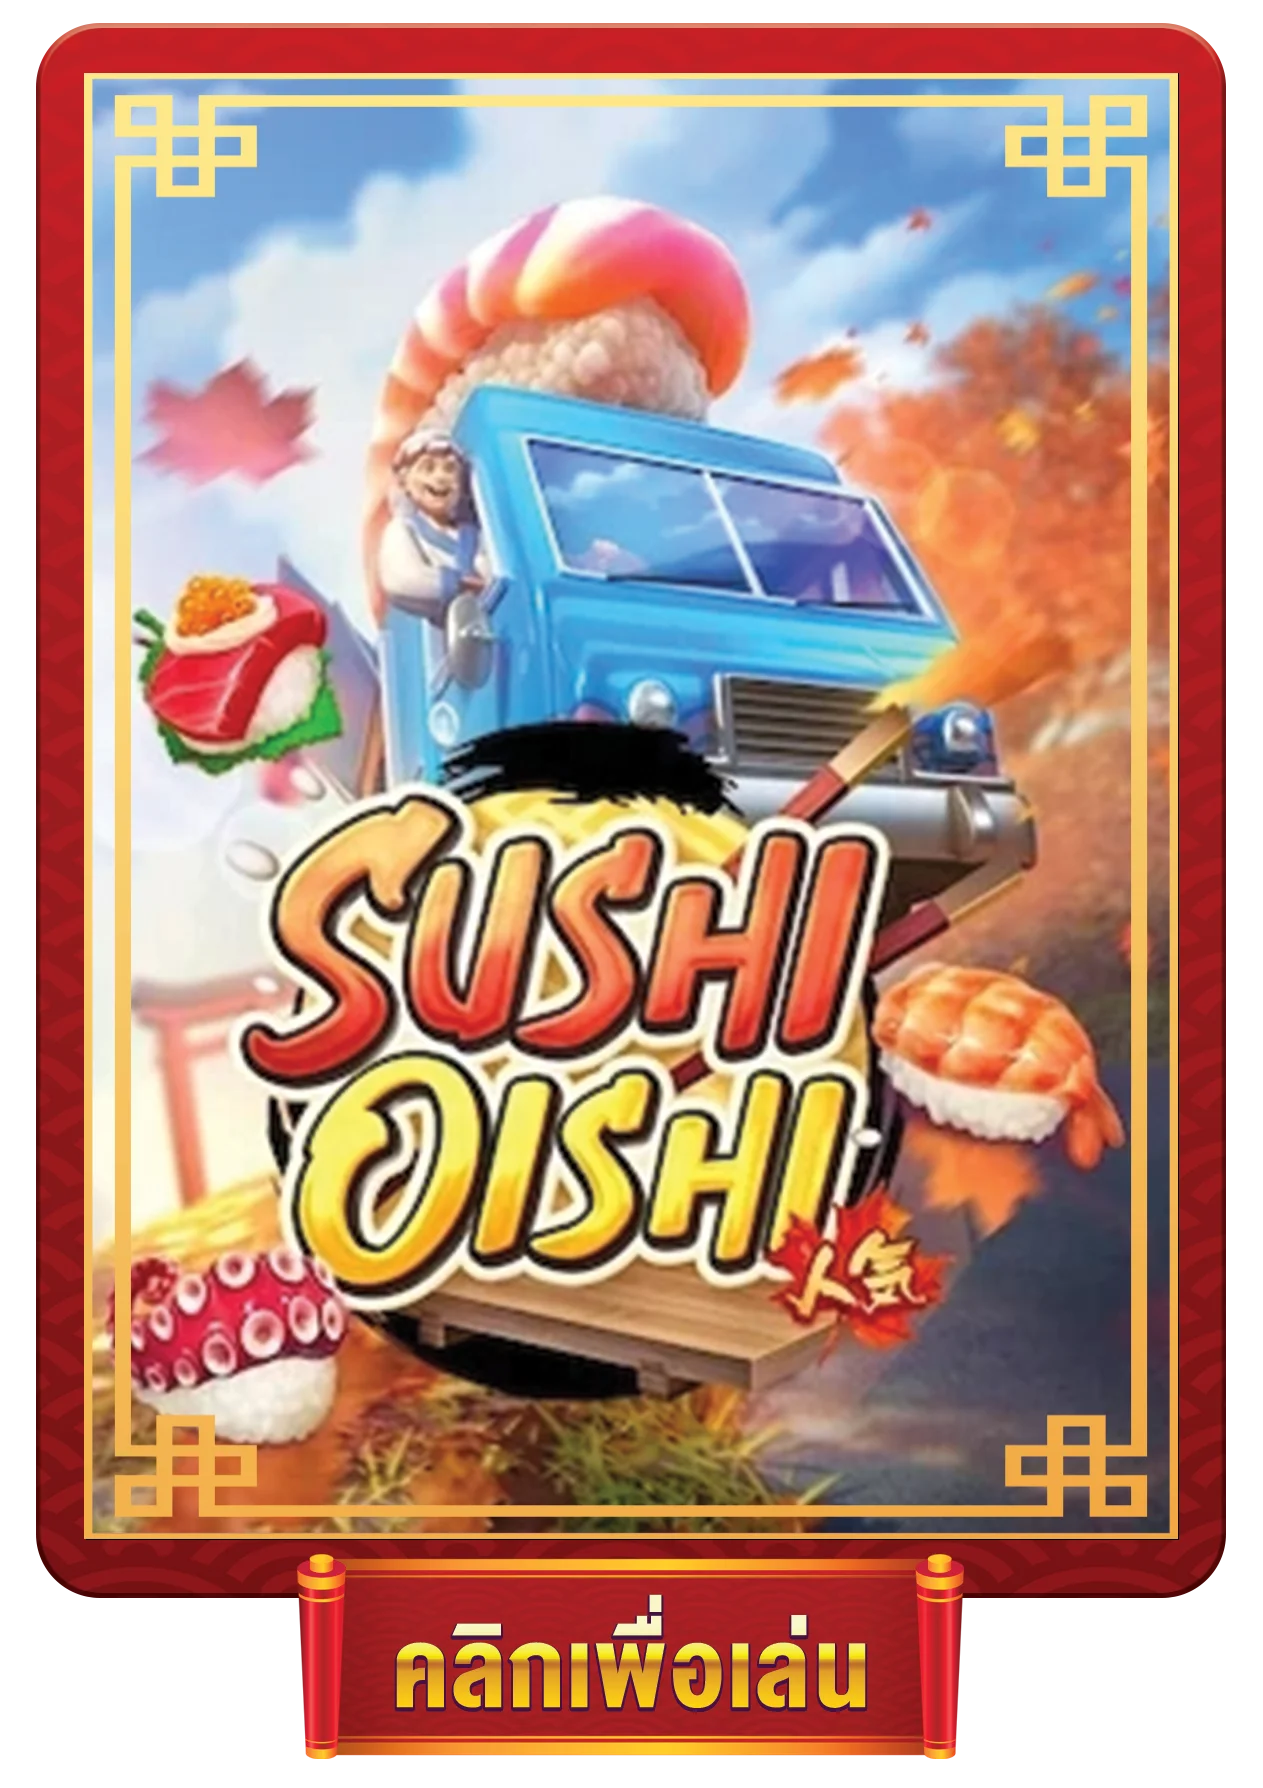 sushi oishi